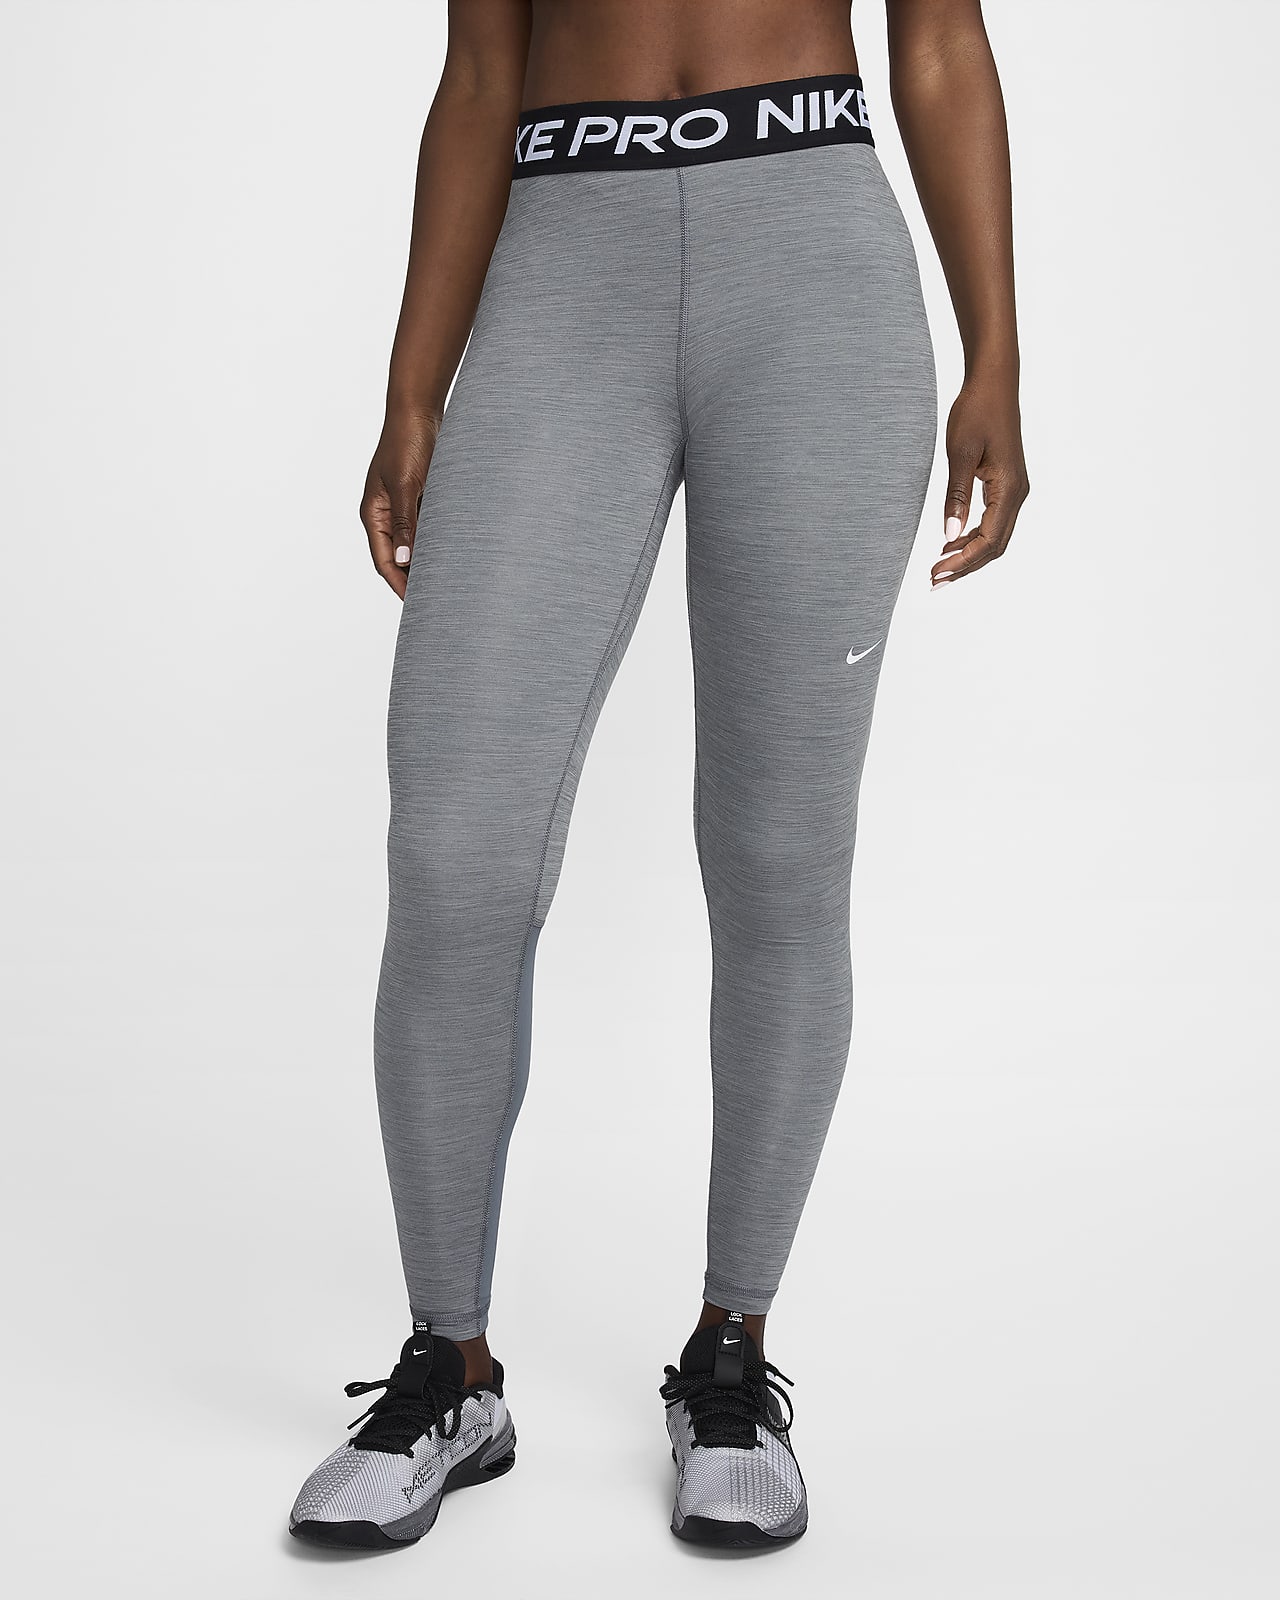 Zwarte damesleggings en -tights. Nike NL